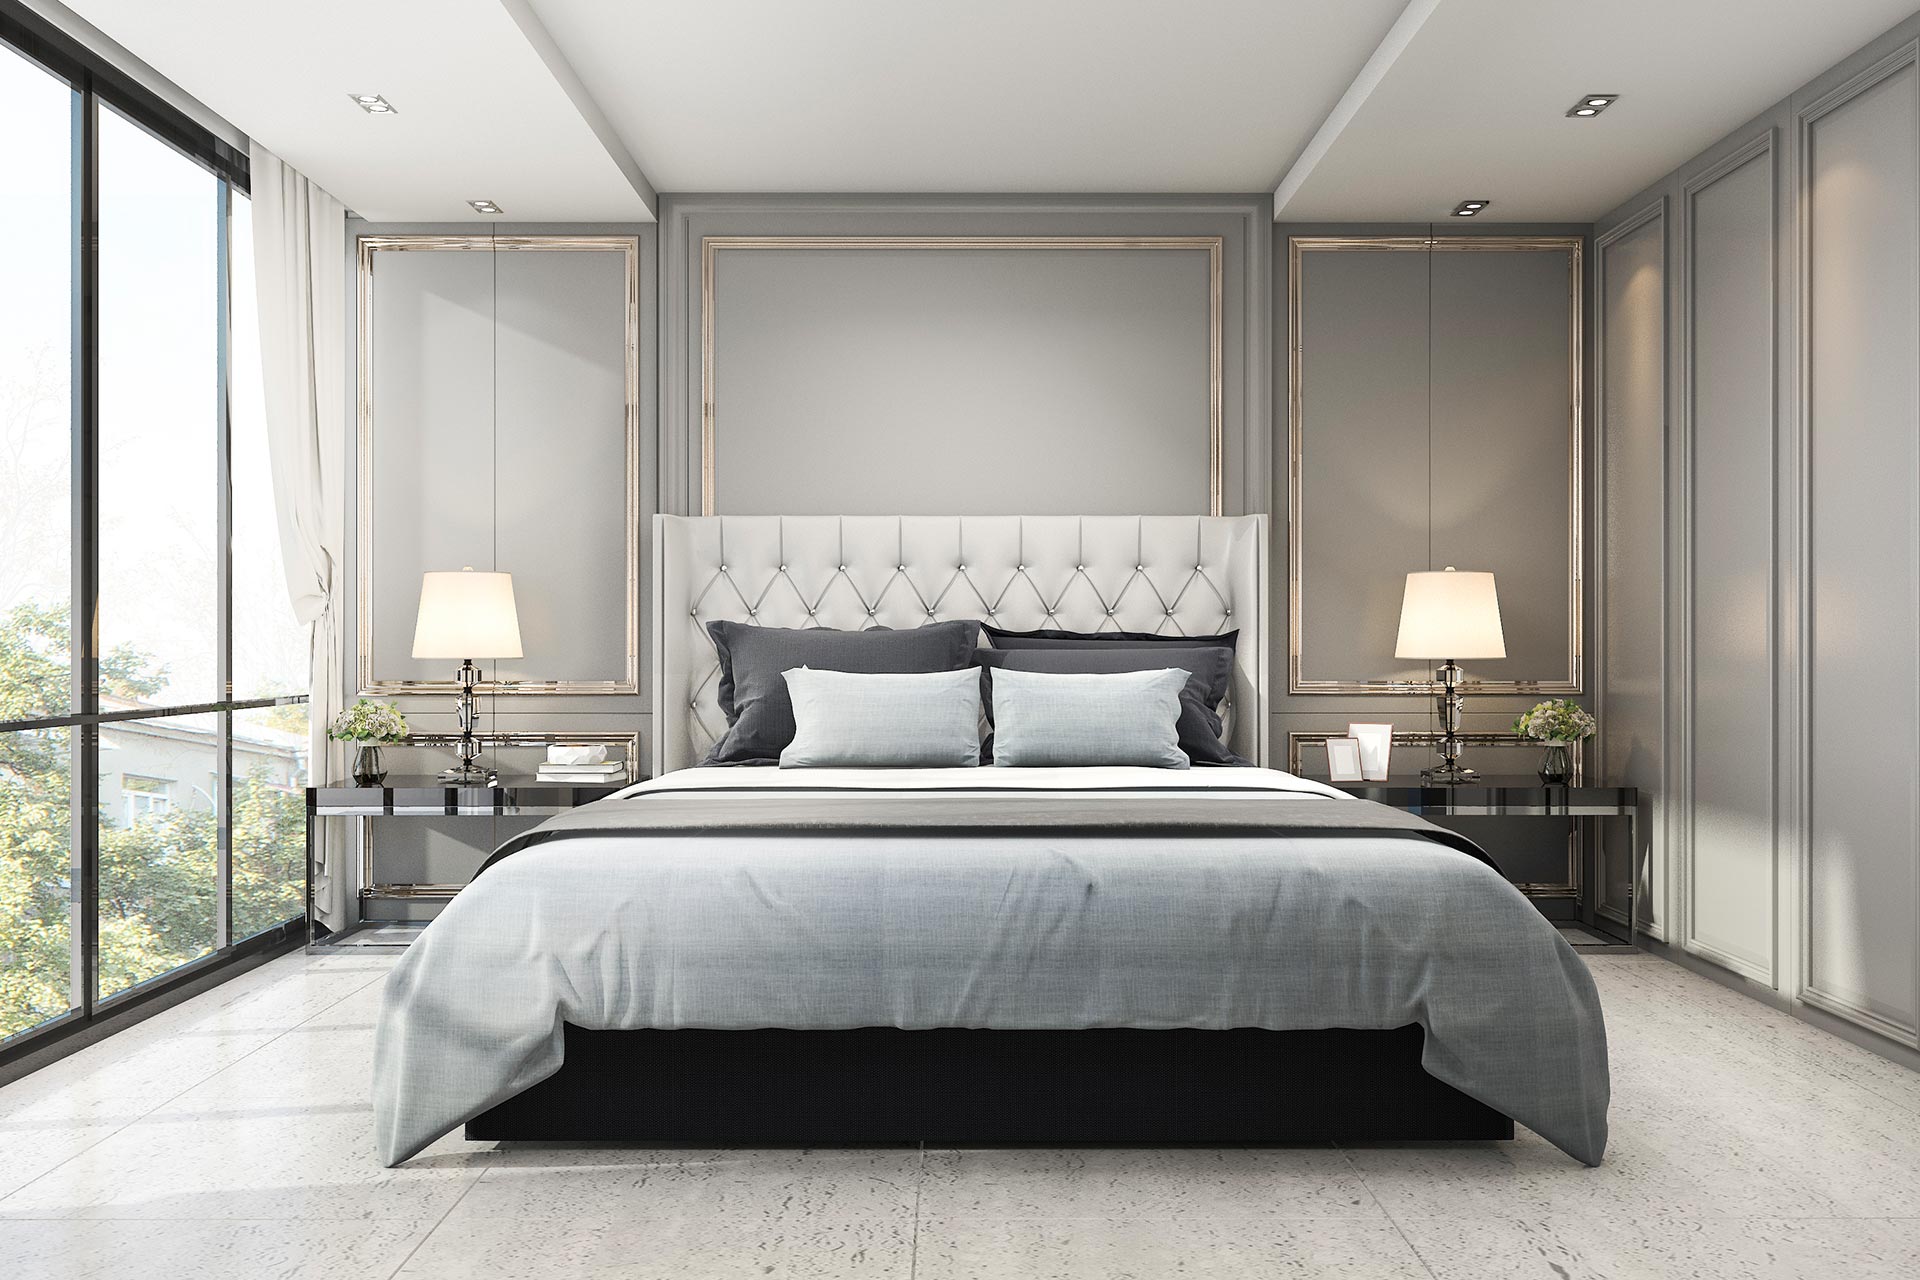 Home Bedroom Sets — Queen Size Bed in Hemet, CA